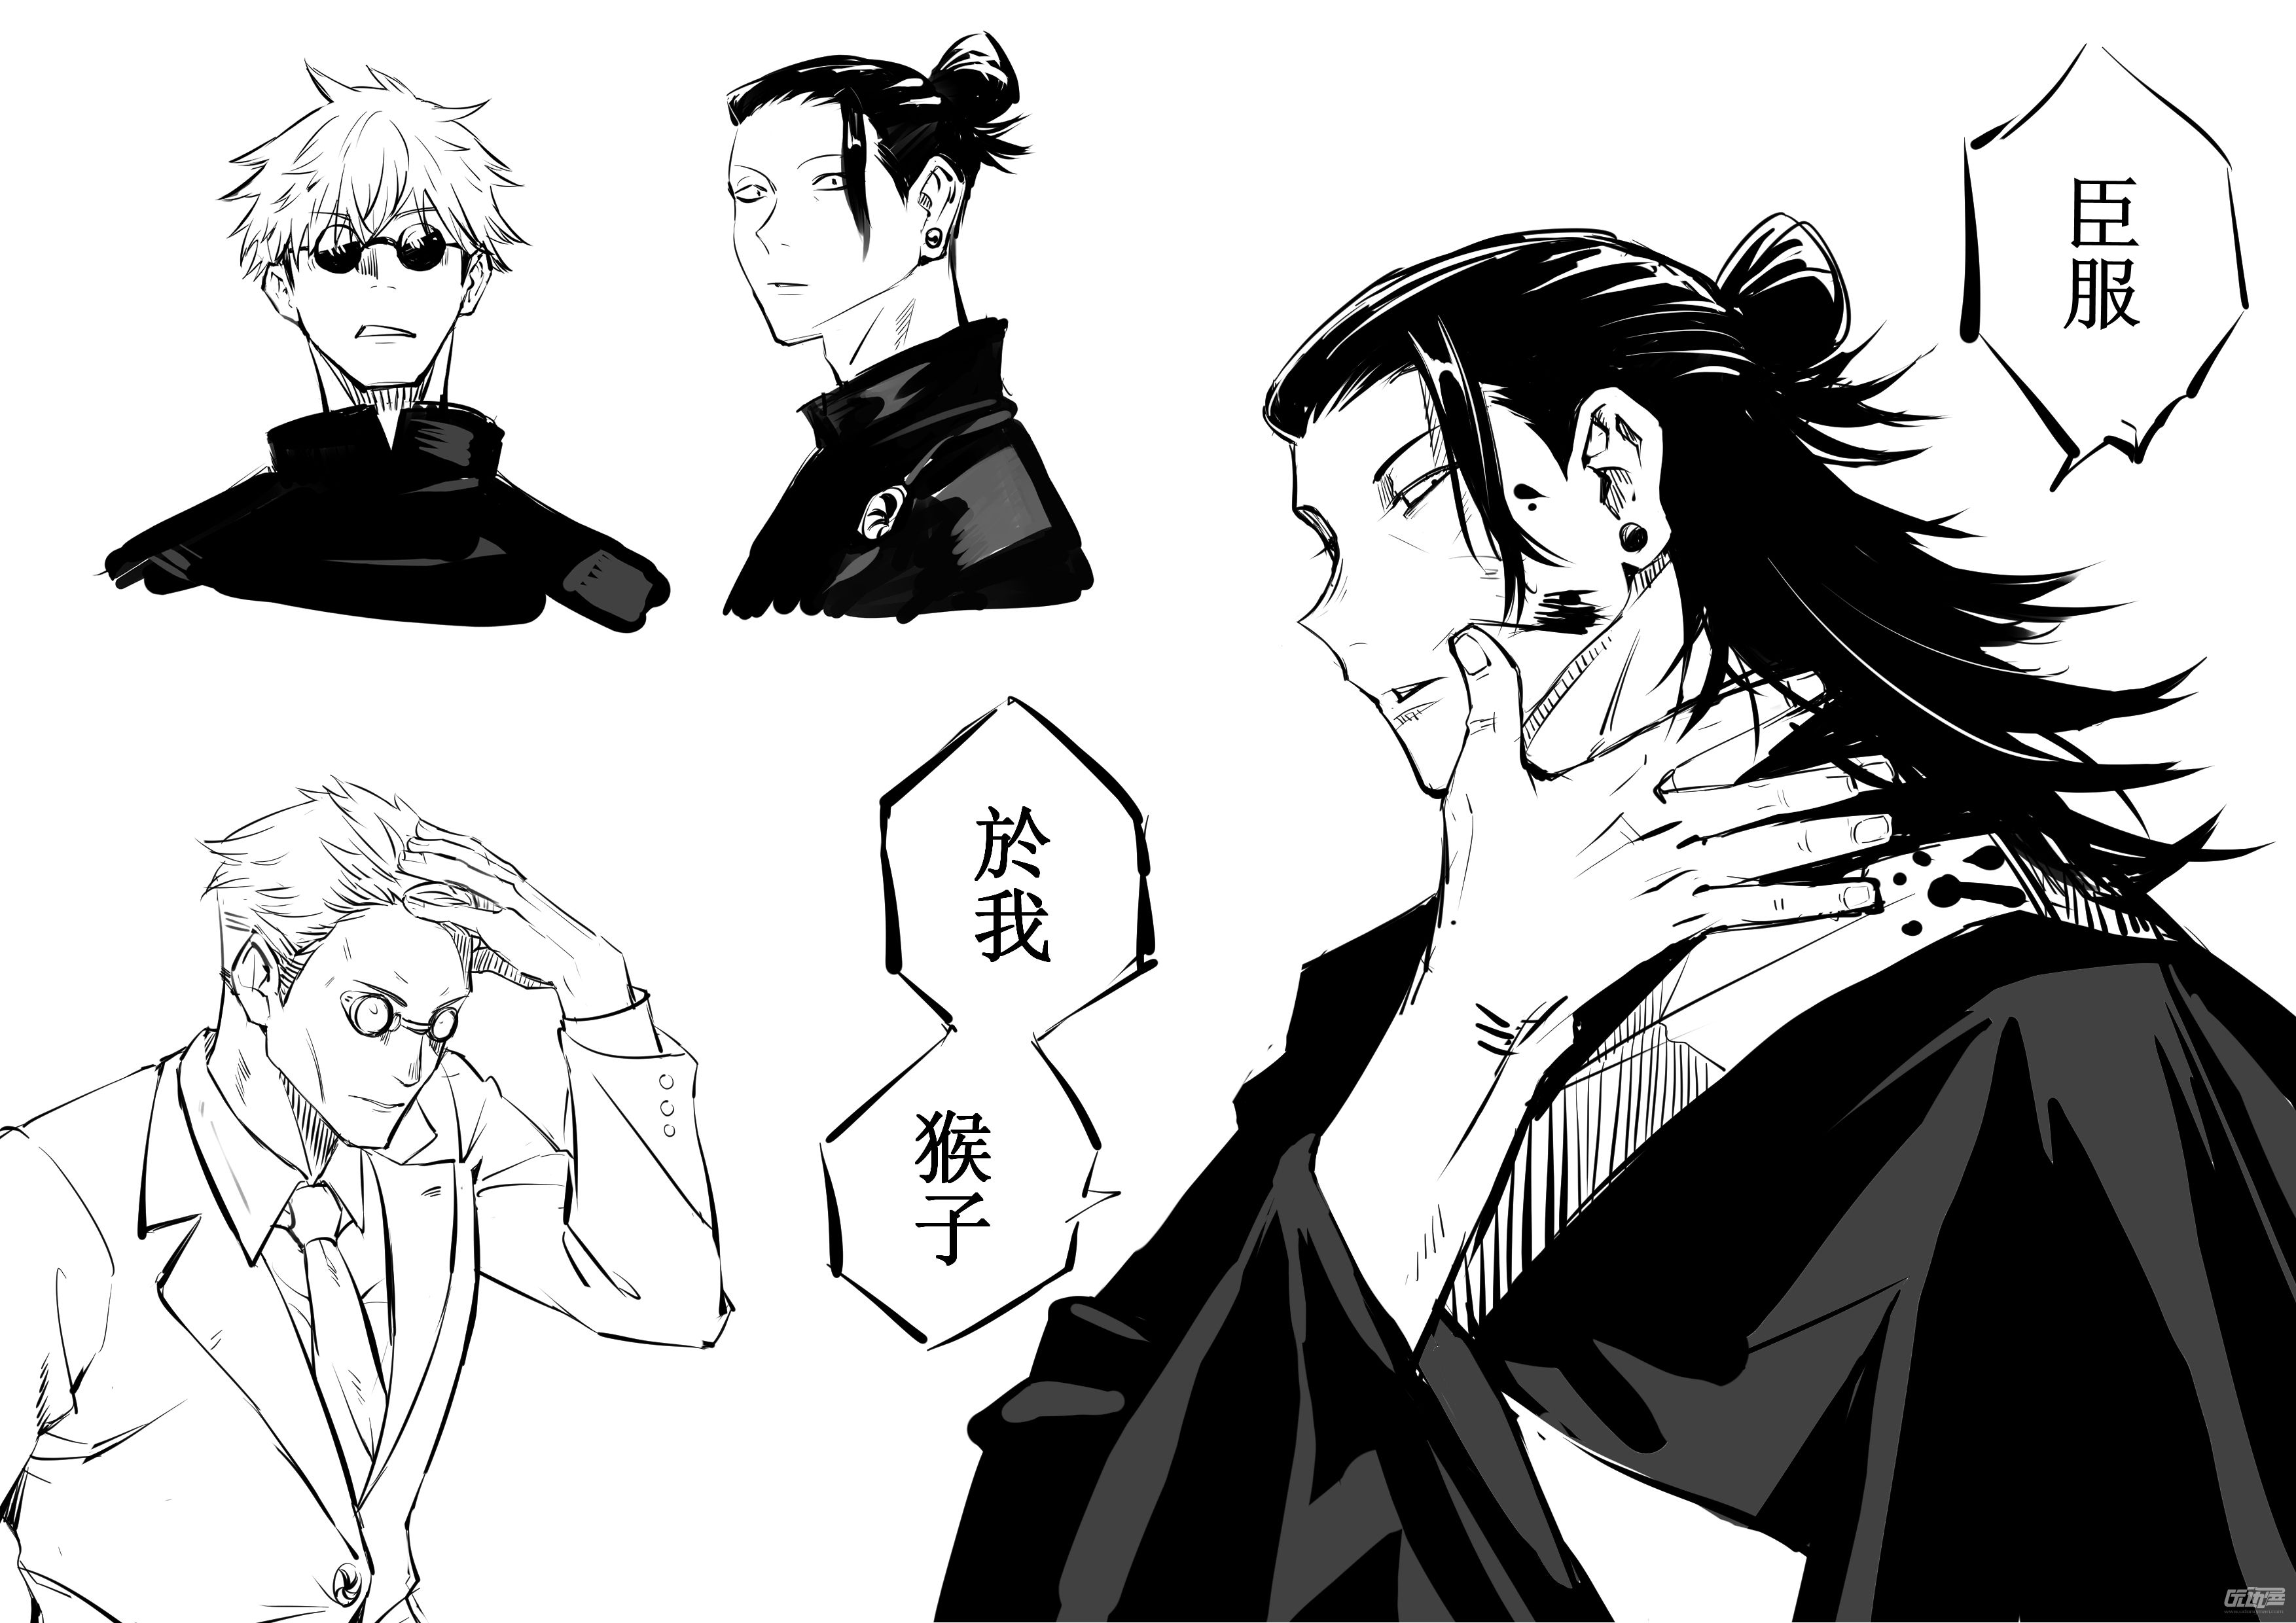 《咒术回战》简体中文漫画1-5卷将于 9月 发售。_来自网易大神圈子_BB姬Studio